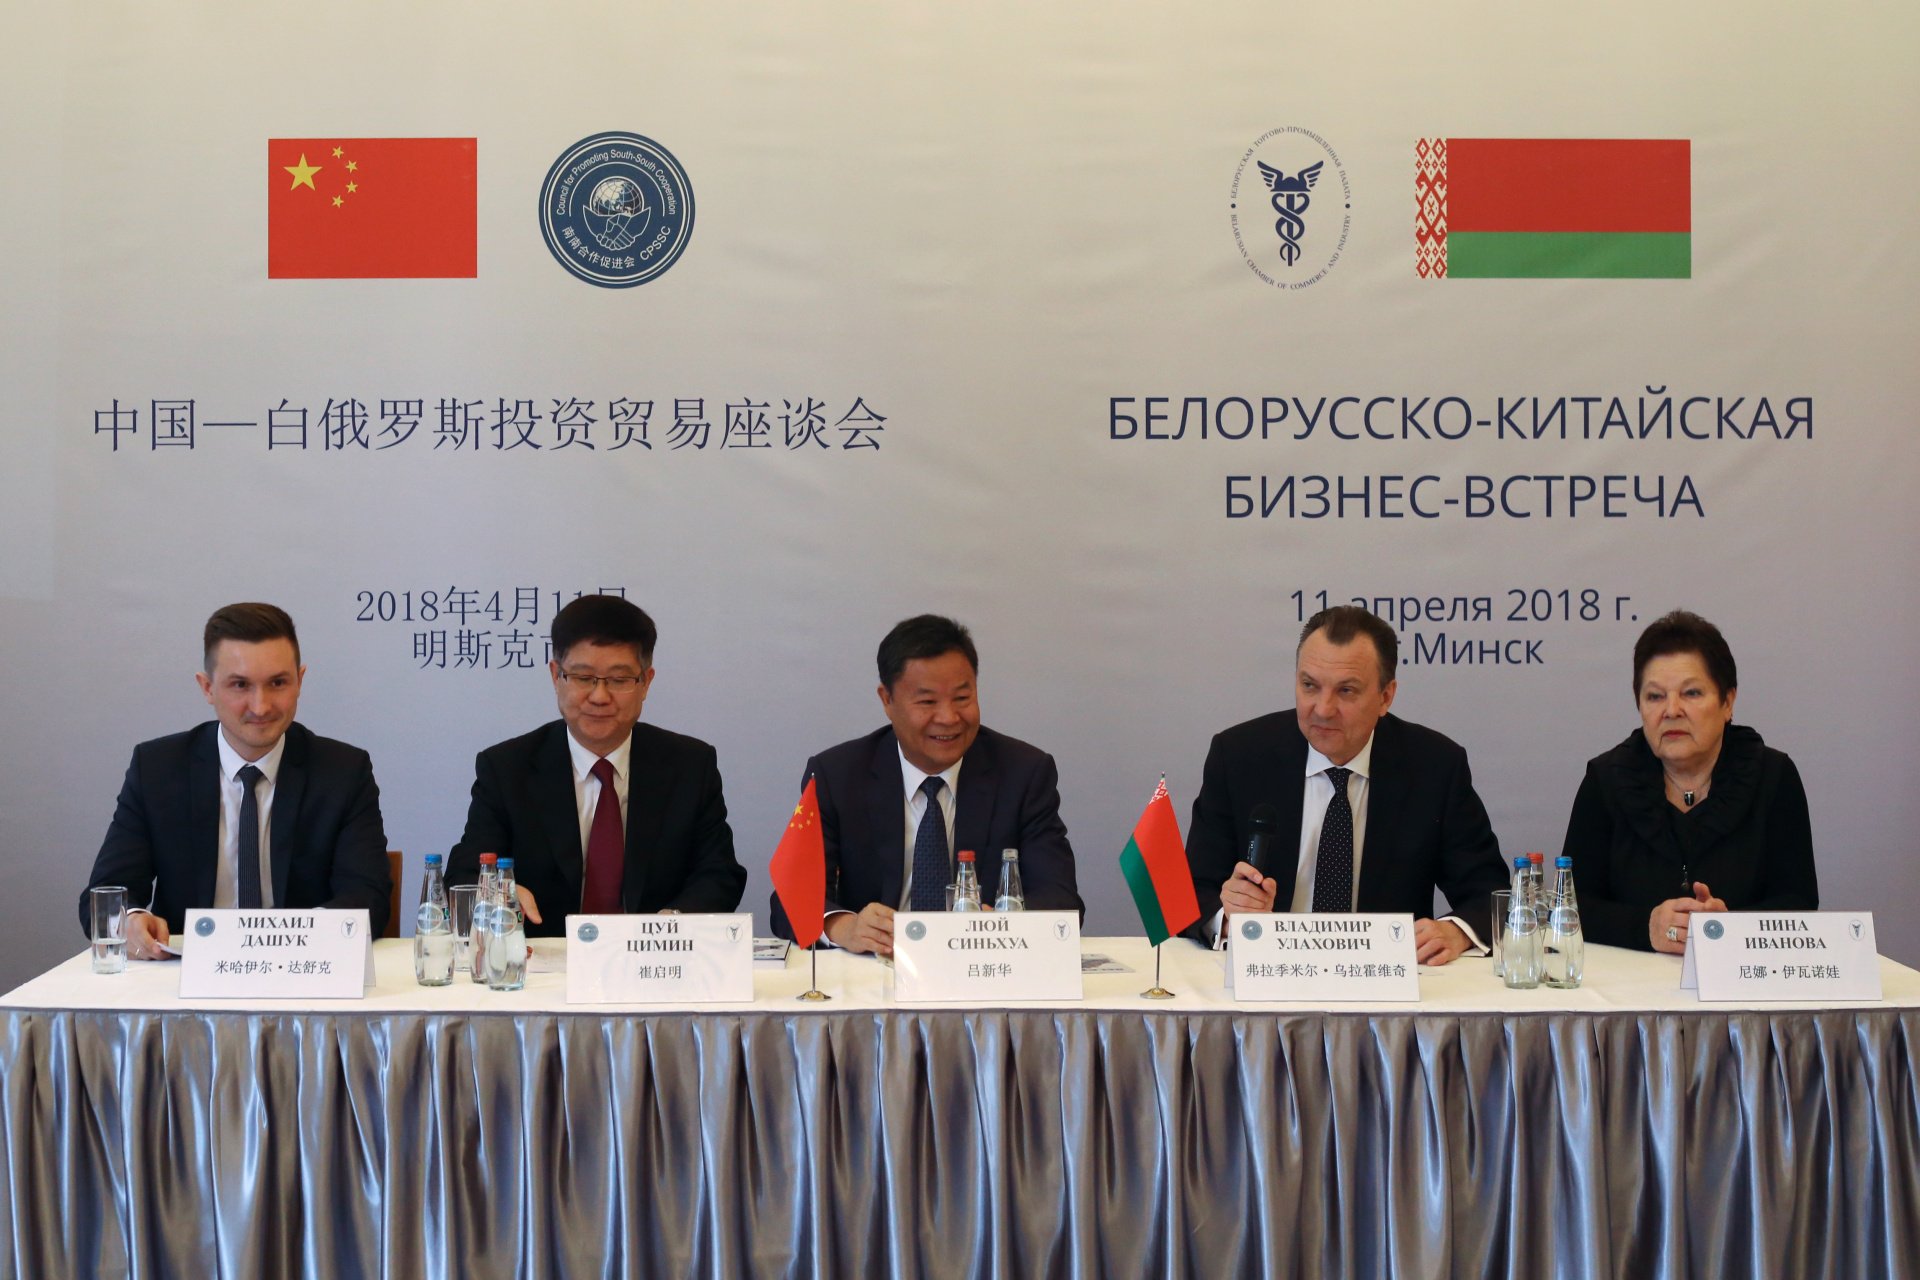 Белорусско-Китайская бизнес-встреча